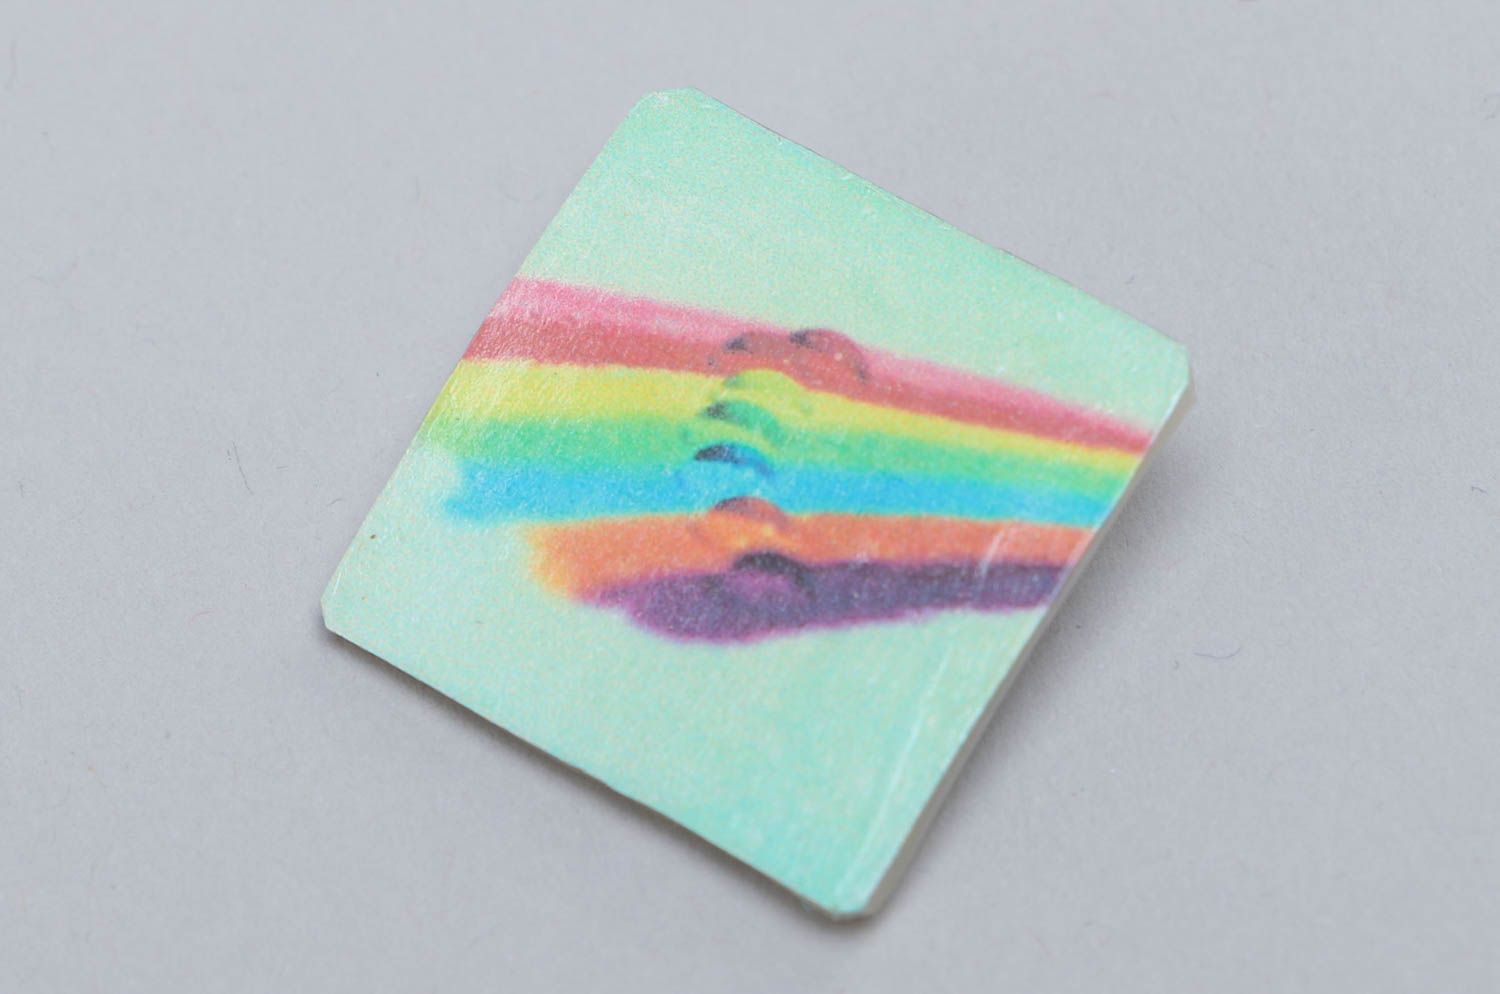 Брошь из самозастывающего пластика квадратная цветная с радугой ручная работа фото 2